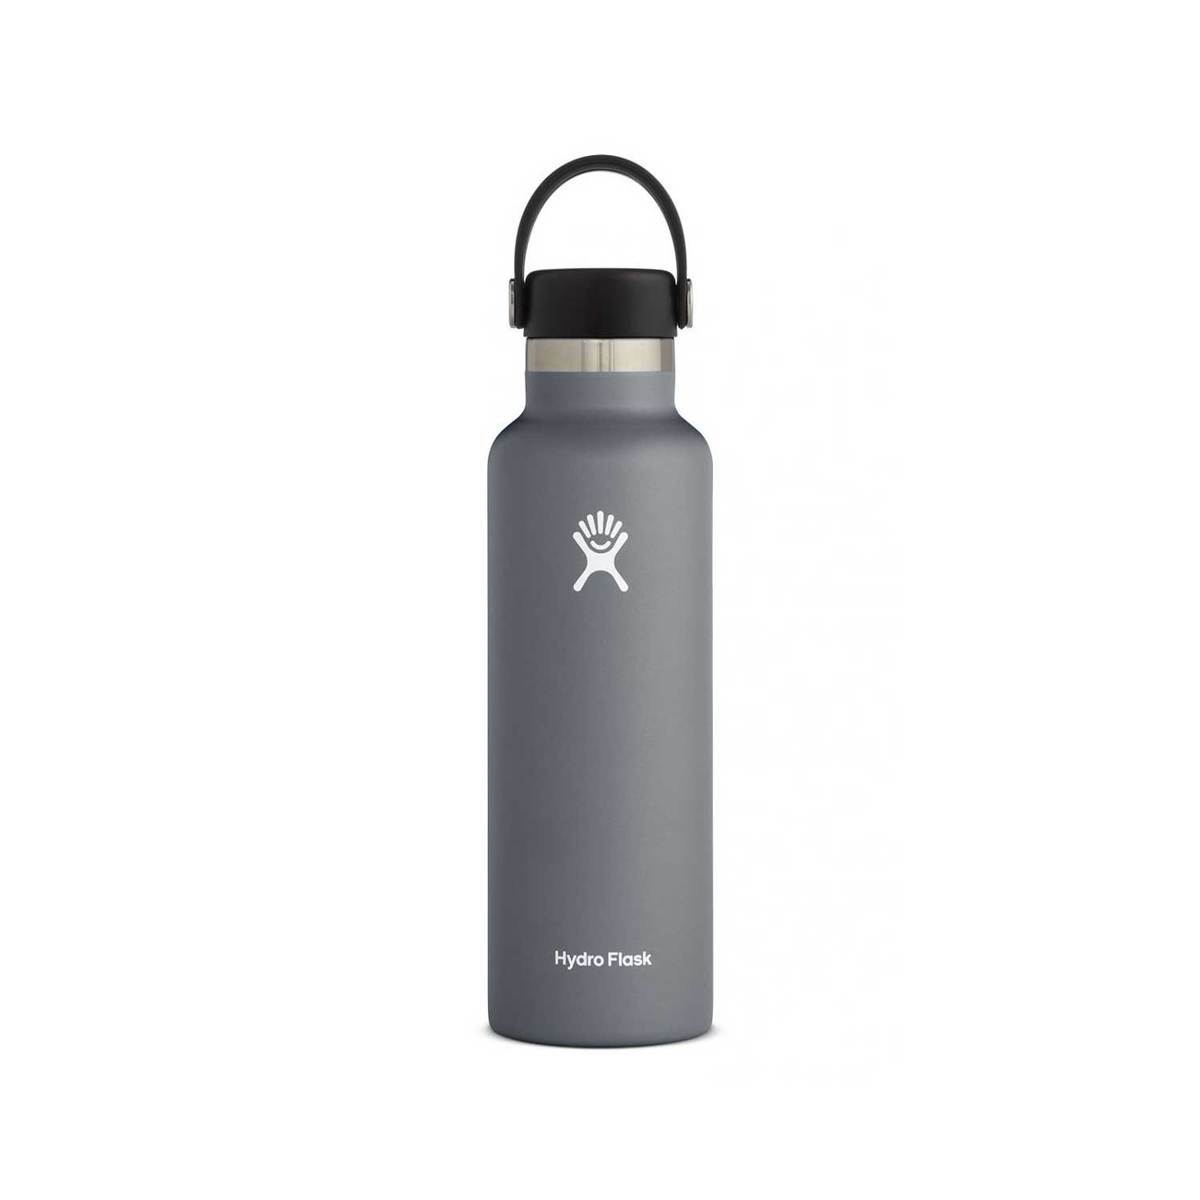 https://www.sportsmans.com/medias/hydro-flask-21oz-standard-mouth-insulated-bottle-with-flex-cap-stone-1690425-1.jpg?context=bWFzdGVyfGltYWdlc3wyMTczOHxpbWFnZS9qcGVnfGltYWdlcy9oNzgvaGRjLzk4NjcyODc3ODk1OTguanBnfDU3OTAwODc1ZWIwNmMzMDU4NjAwMzlmOTk1YzU0MjNmNGMxYjYzZGQ0MmEzN2UyZWEwZGNmYWUxNWQ5MGYyNGM